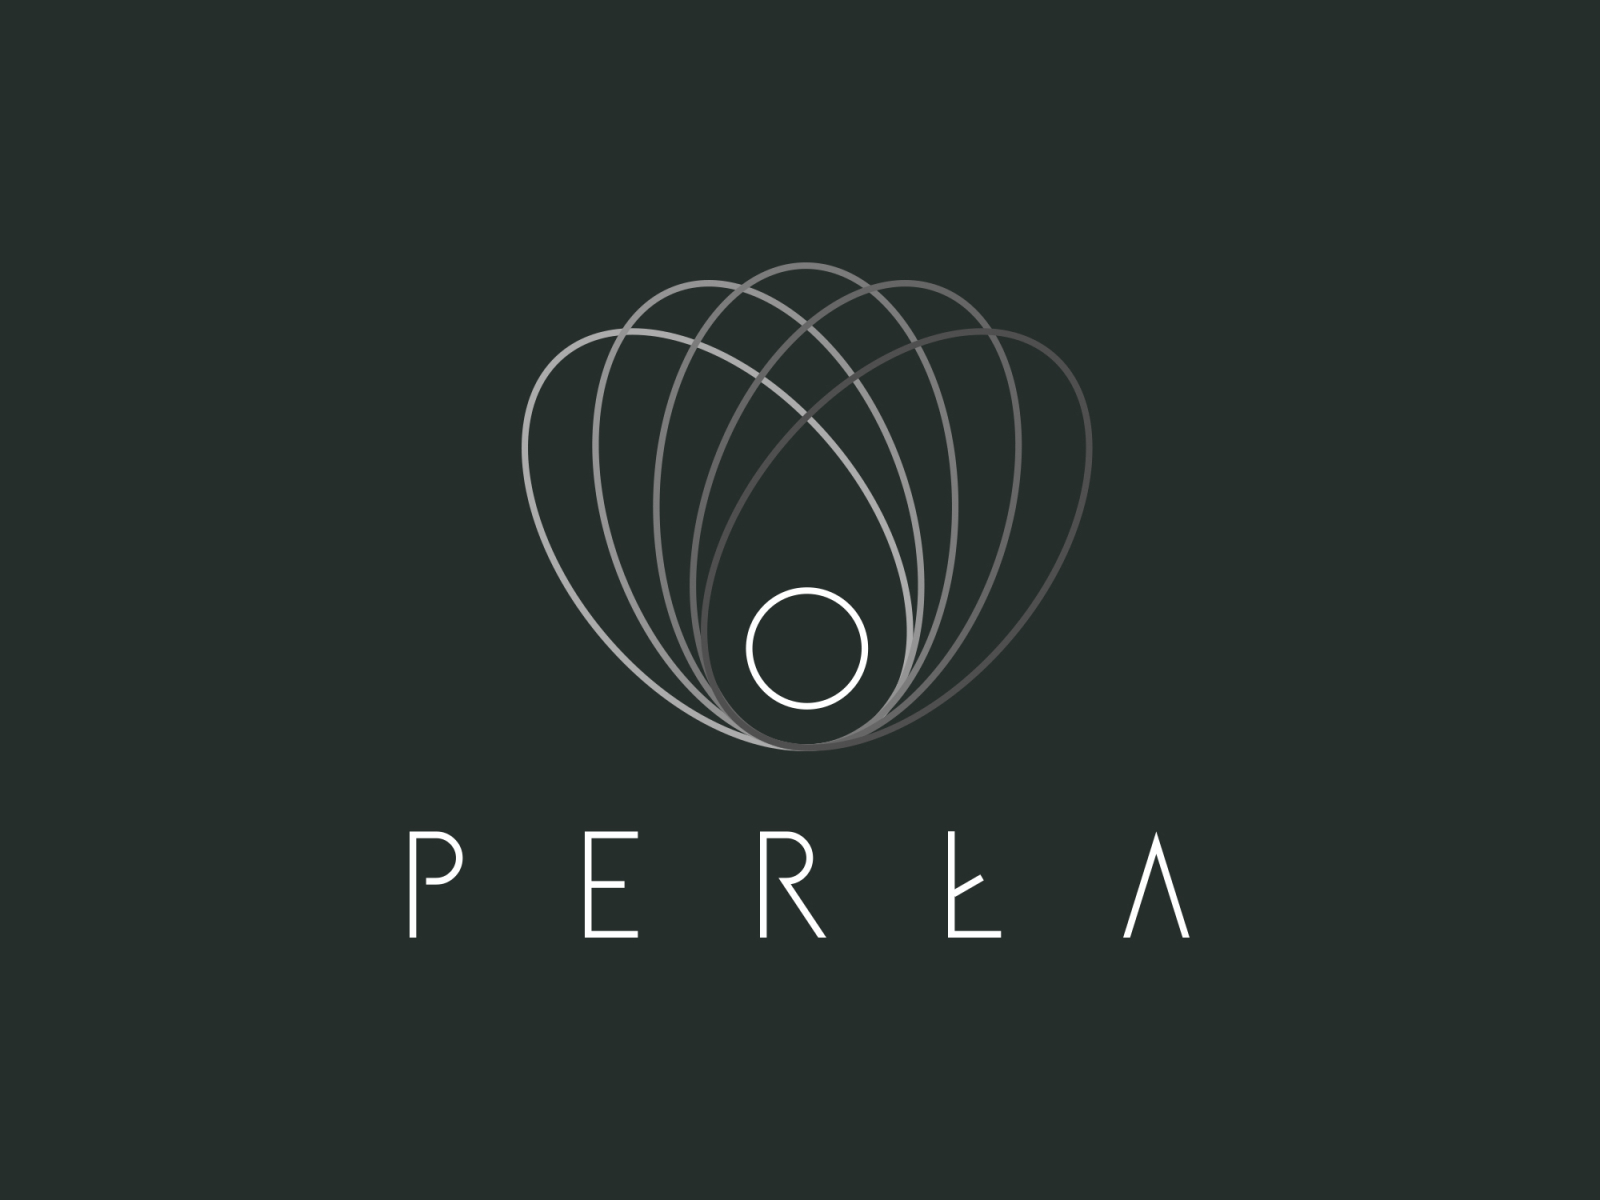 Pearl - logo by Krzysztof Cichocki on Dribbble